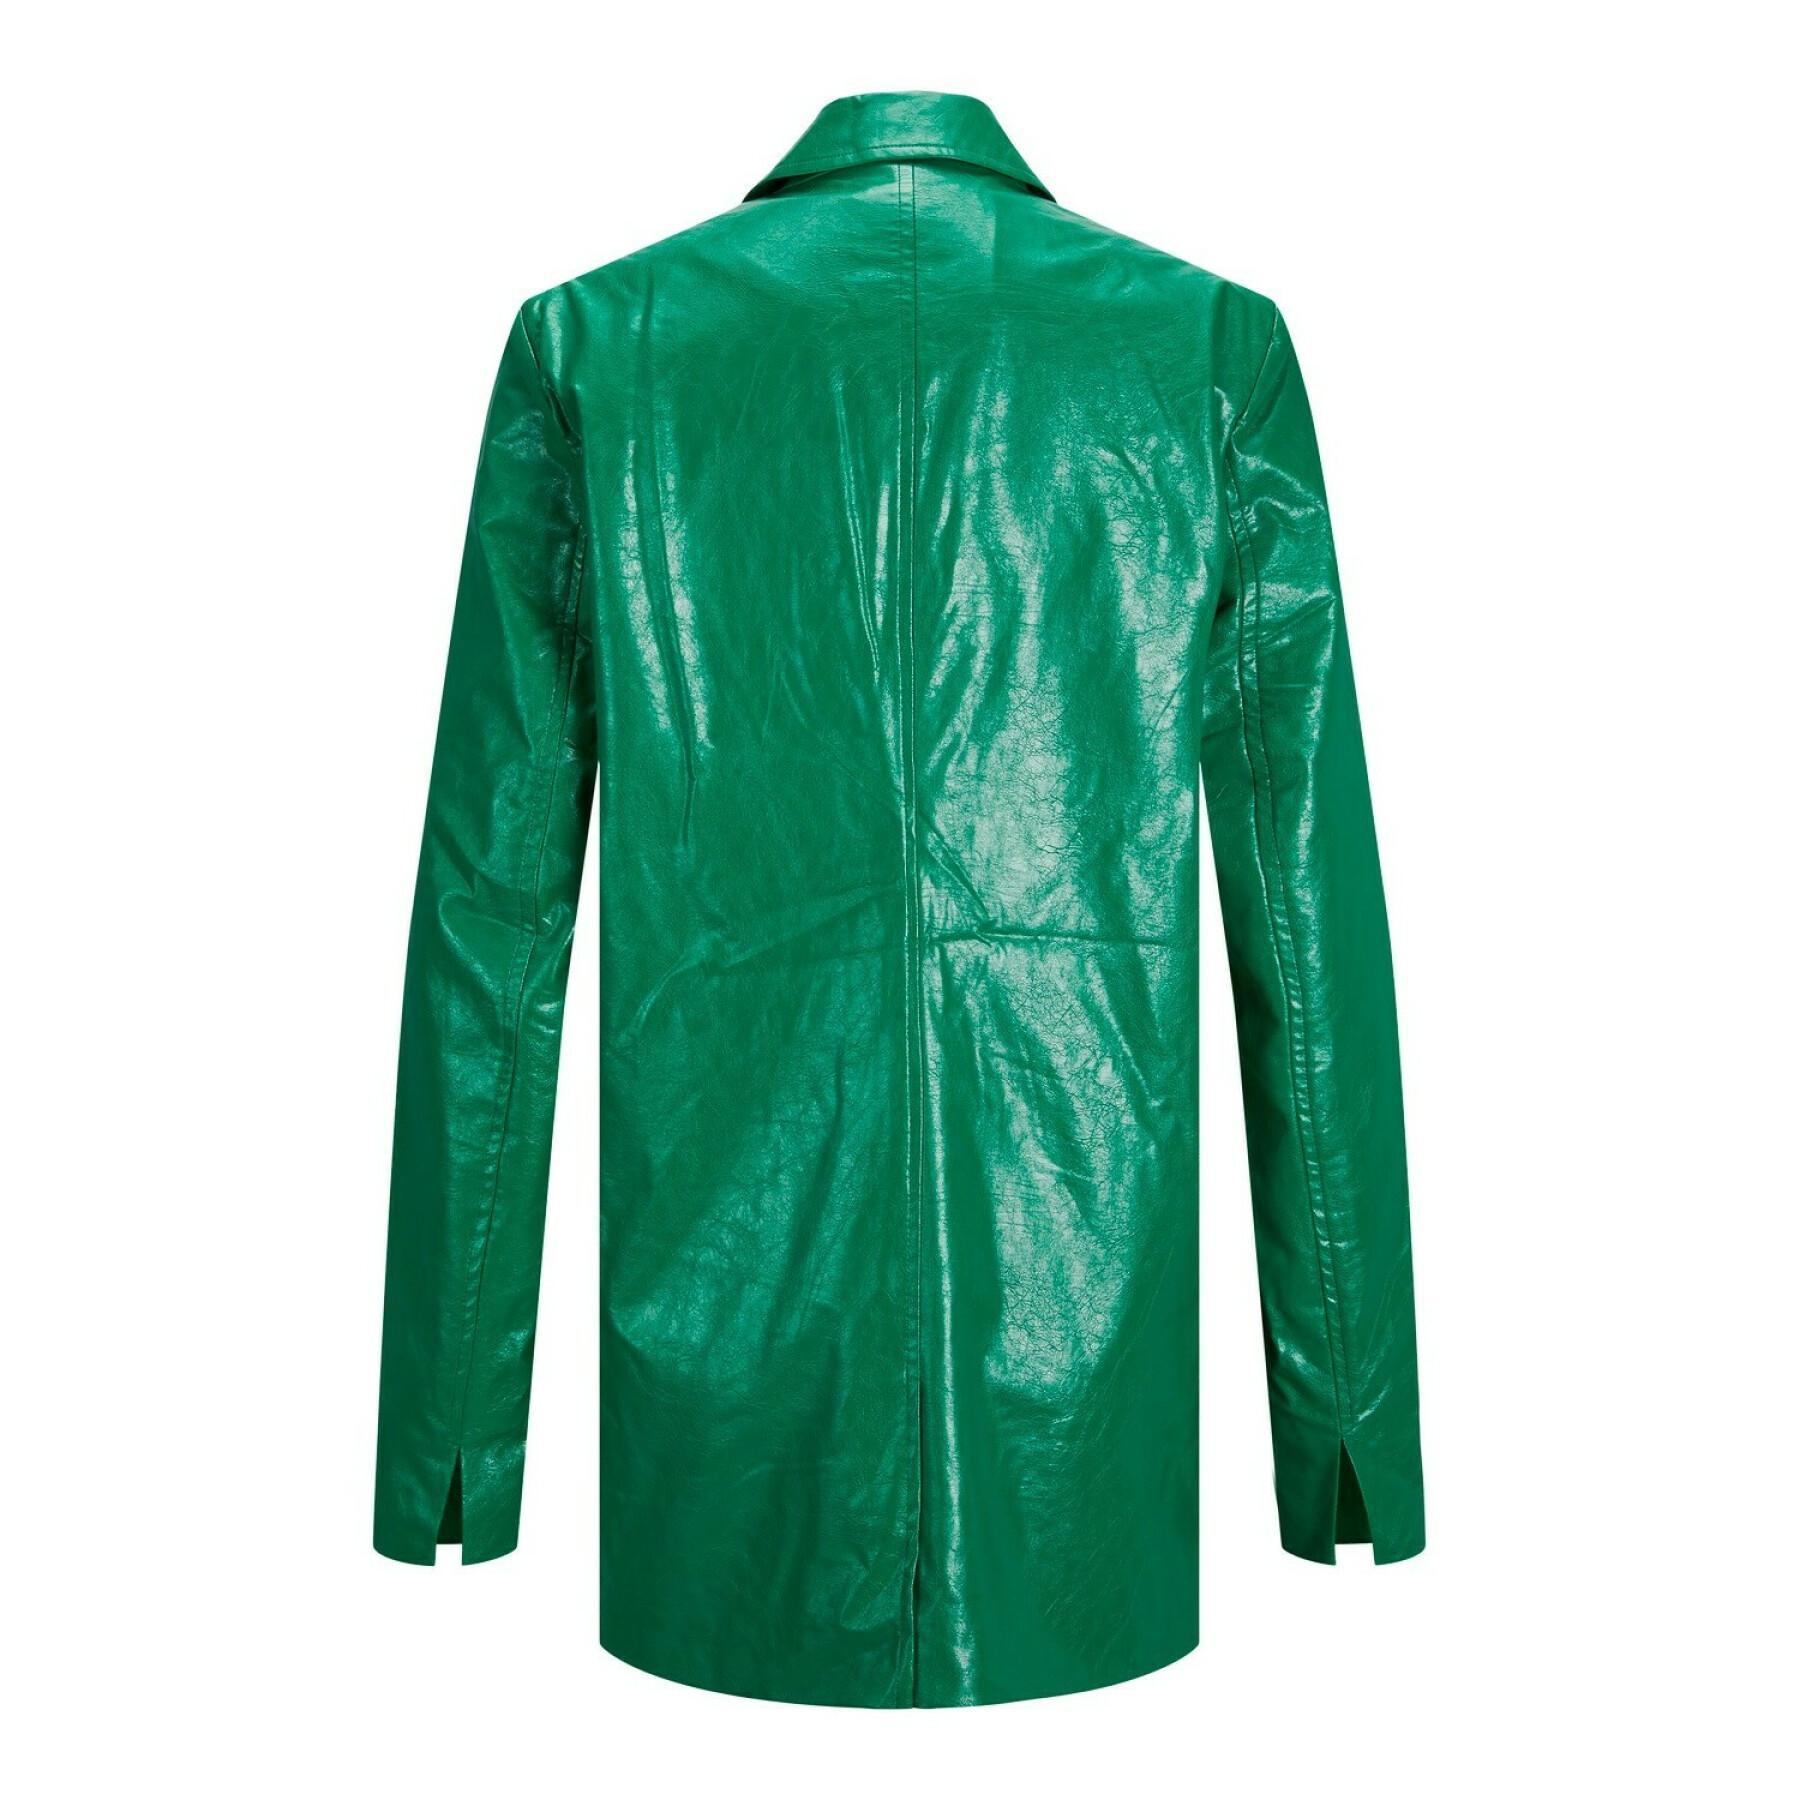 Women's leather blazer jacket JJXX wilson